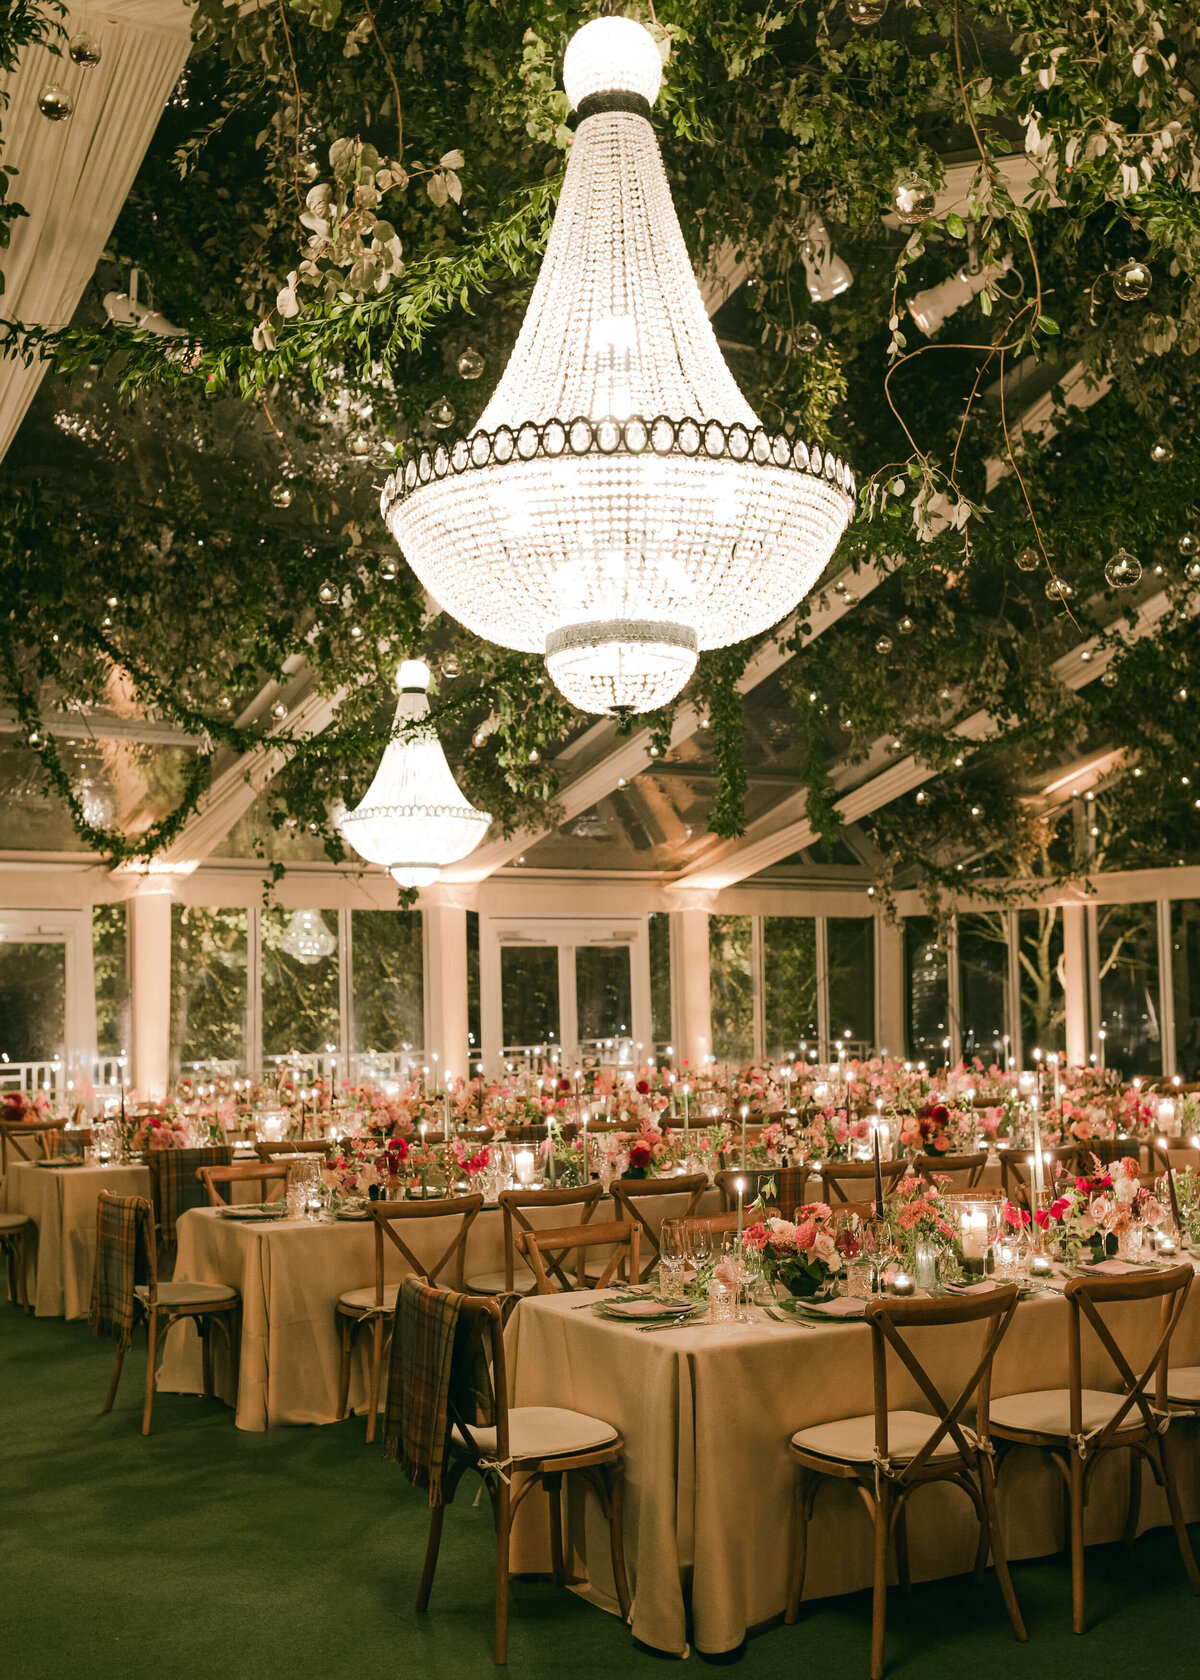 chloe-winstanley-wedding-oxford-gsp-winter-tablescape-chandelier